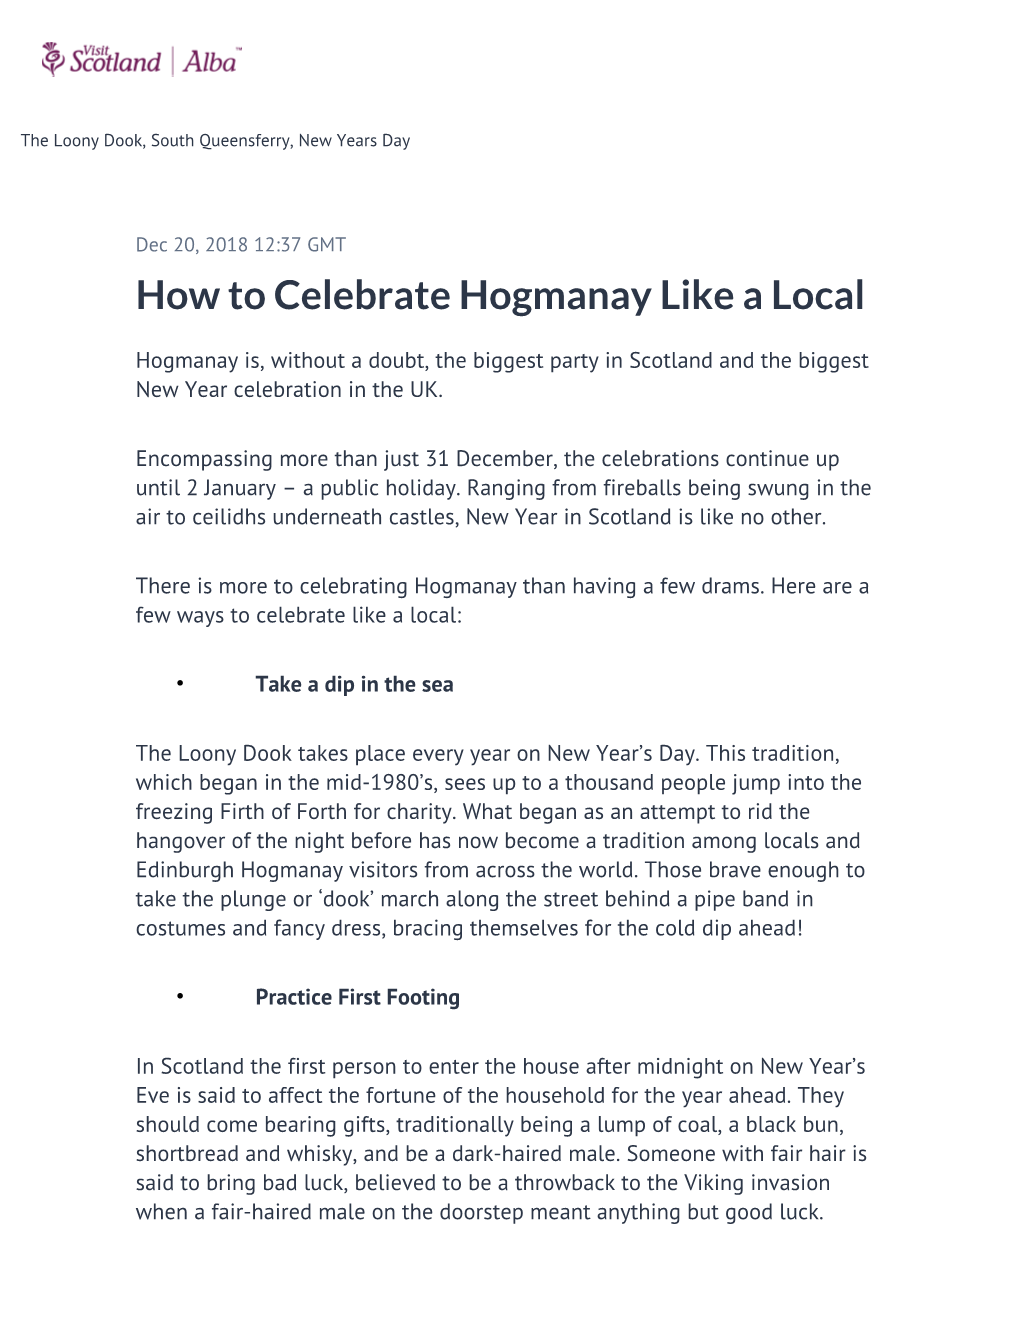 How to Celebrate Hogmanay Like a Local